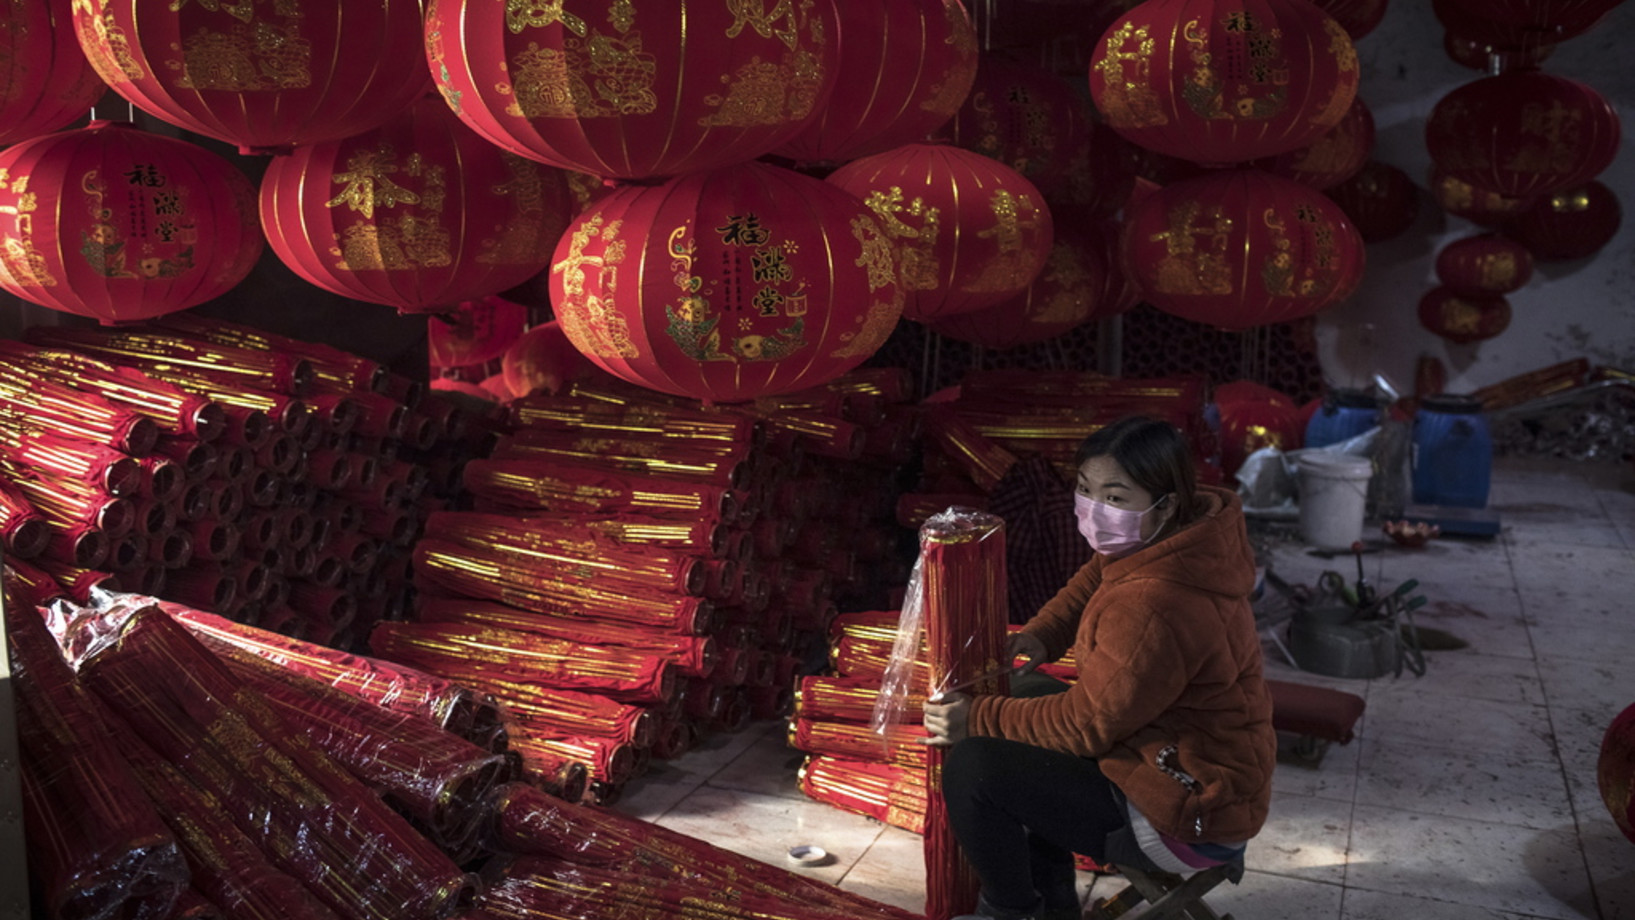 Eine chinesische Arbeiterin stellt in einer privaten Fabrik im Dorf Tuntou, Provinz Hebei, rote Laternen her, die beim Neujahrs- oder Frühlingsfest im ganzen Land nicht fehlen dürfen. (Keystone/EPA, Roman Pilipey)
